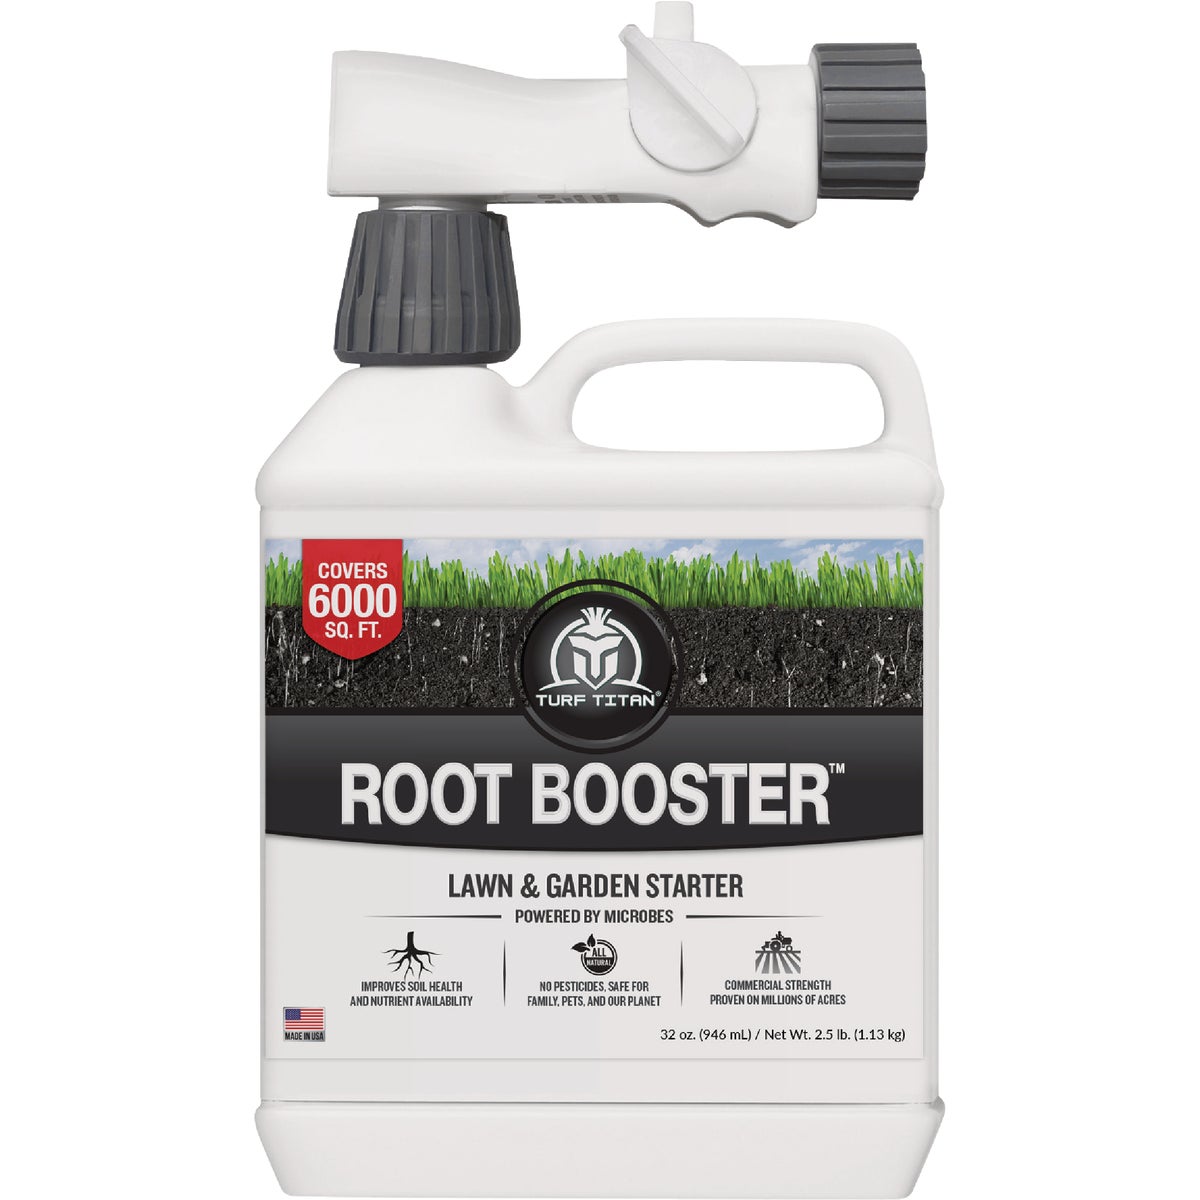 Turf Titan Root Booster 32 Oz. 6000 Sq. Ft.1-0-0 Lawn & Garden Starter Fertilizer